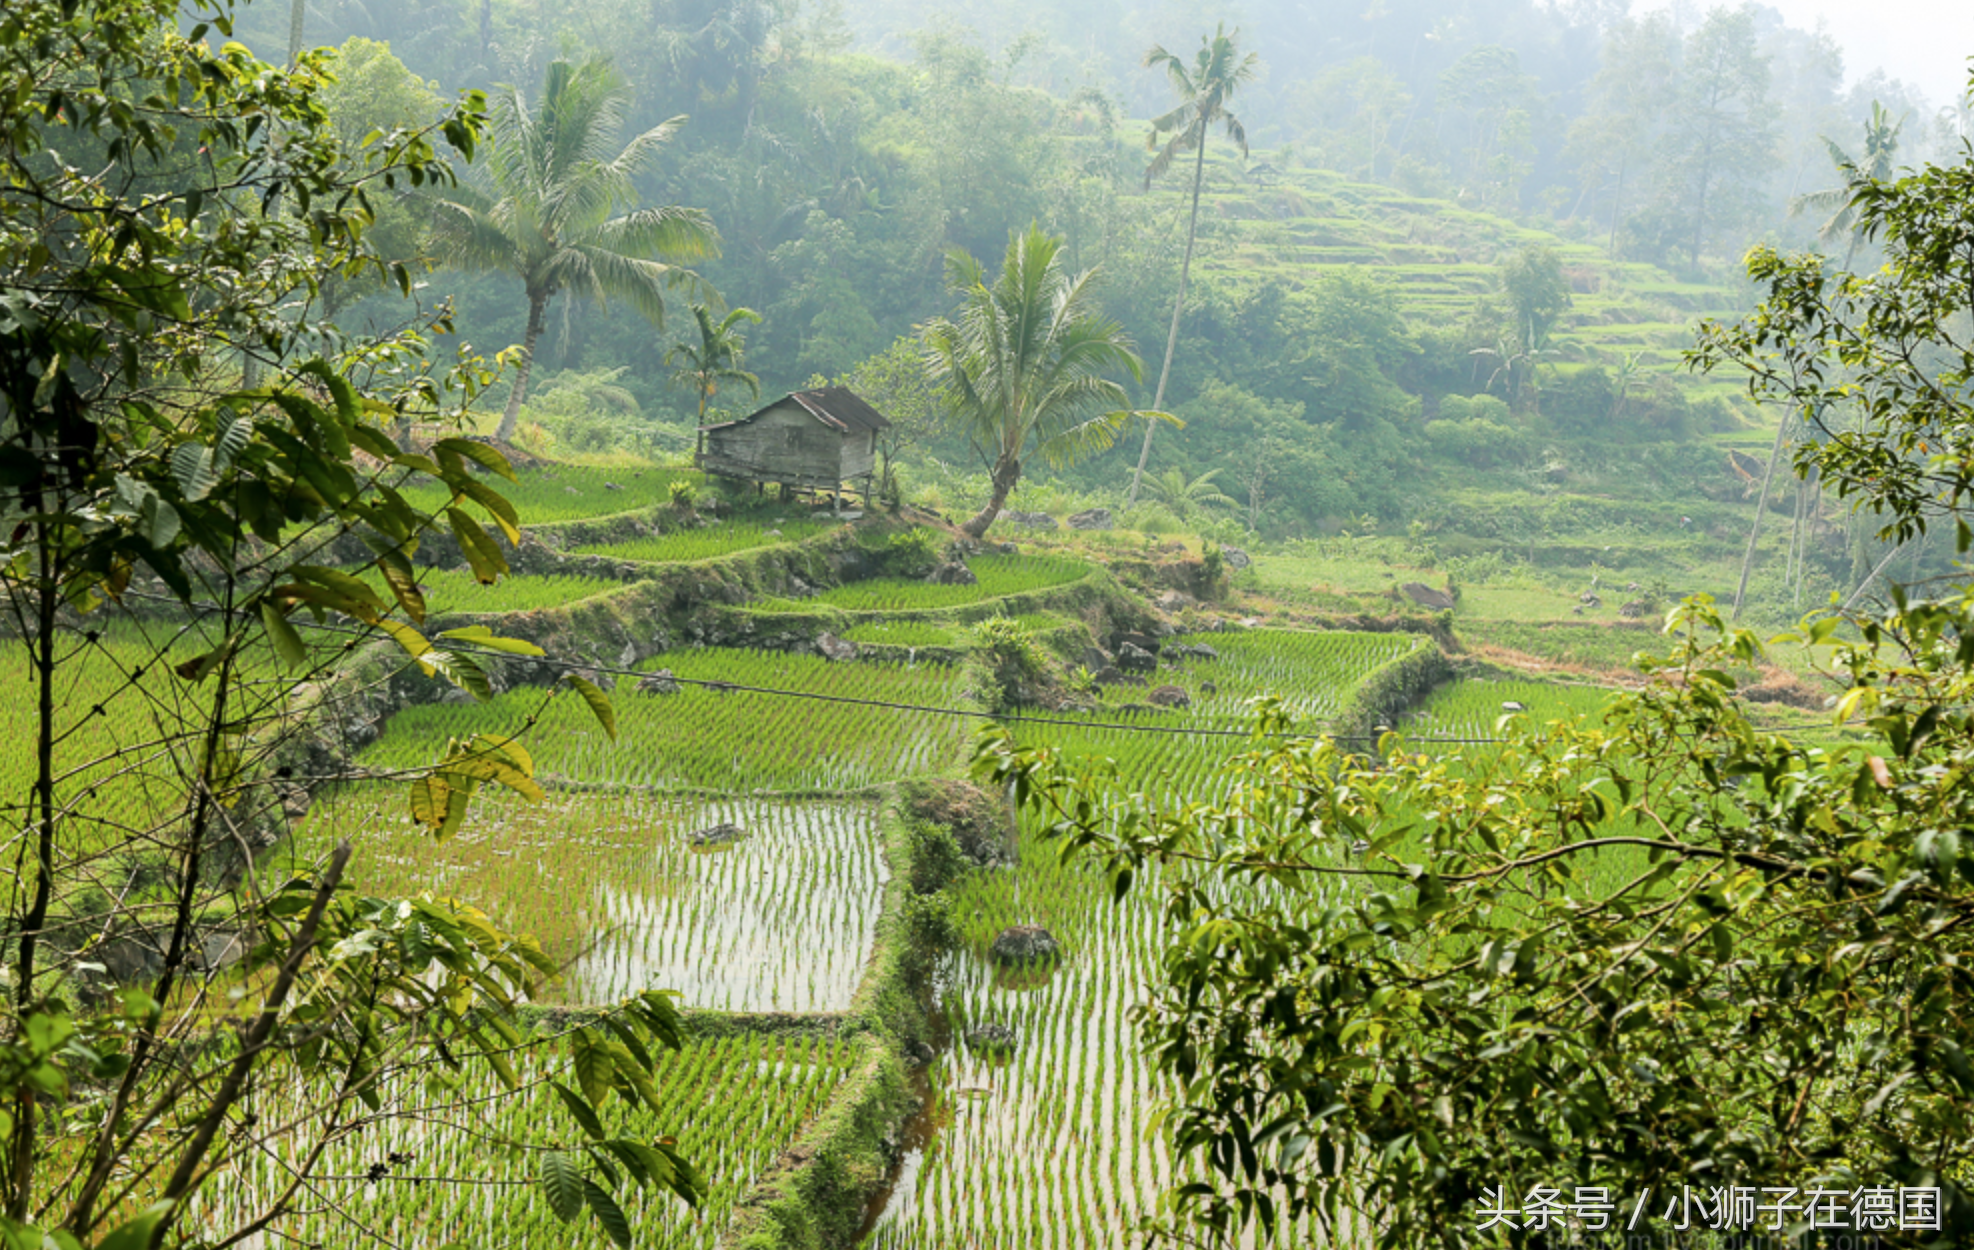 充满异国情调的印尼农村,只是生活水平太过低下